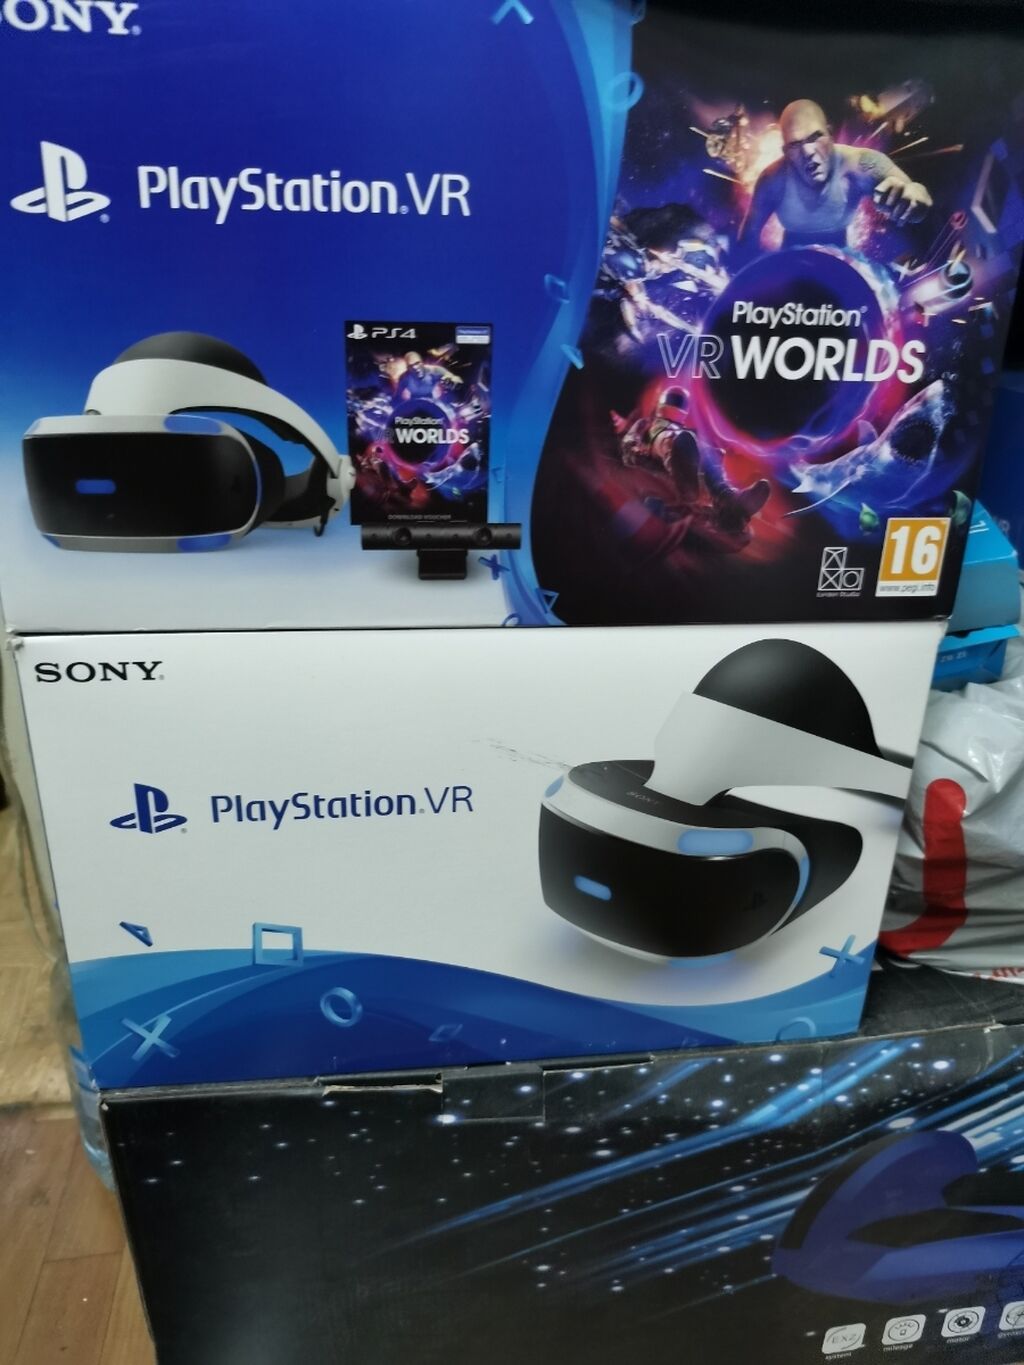 PlayStation VR Worlds - PlayStation 4, PlayStation 4